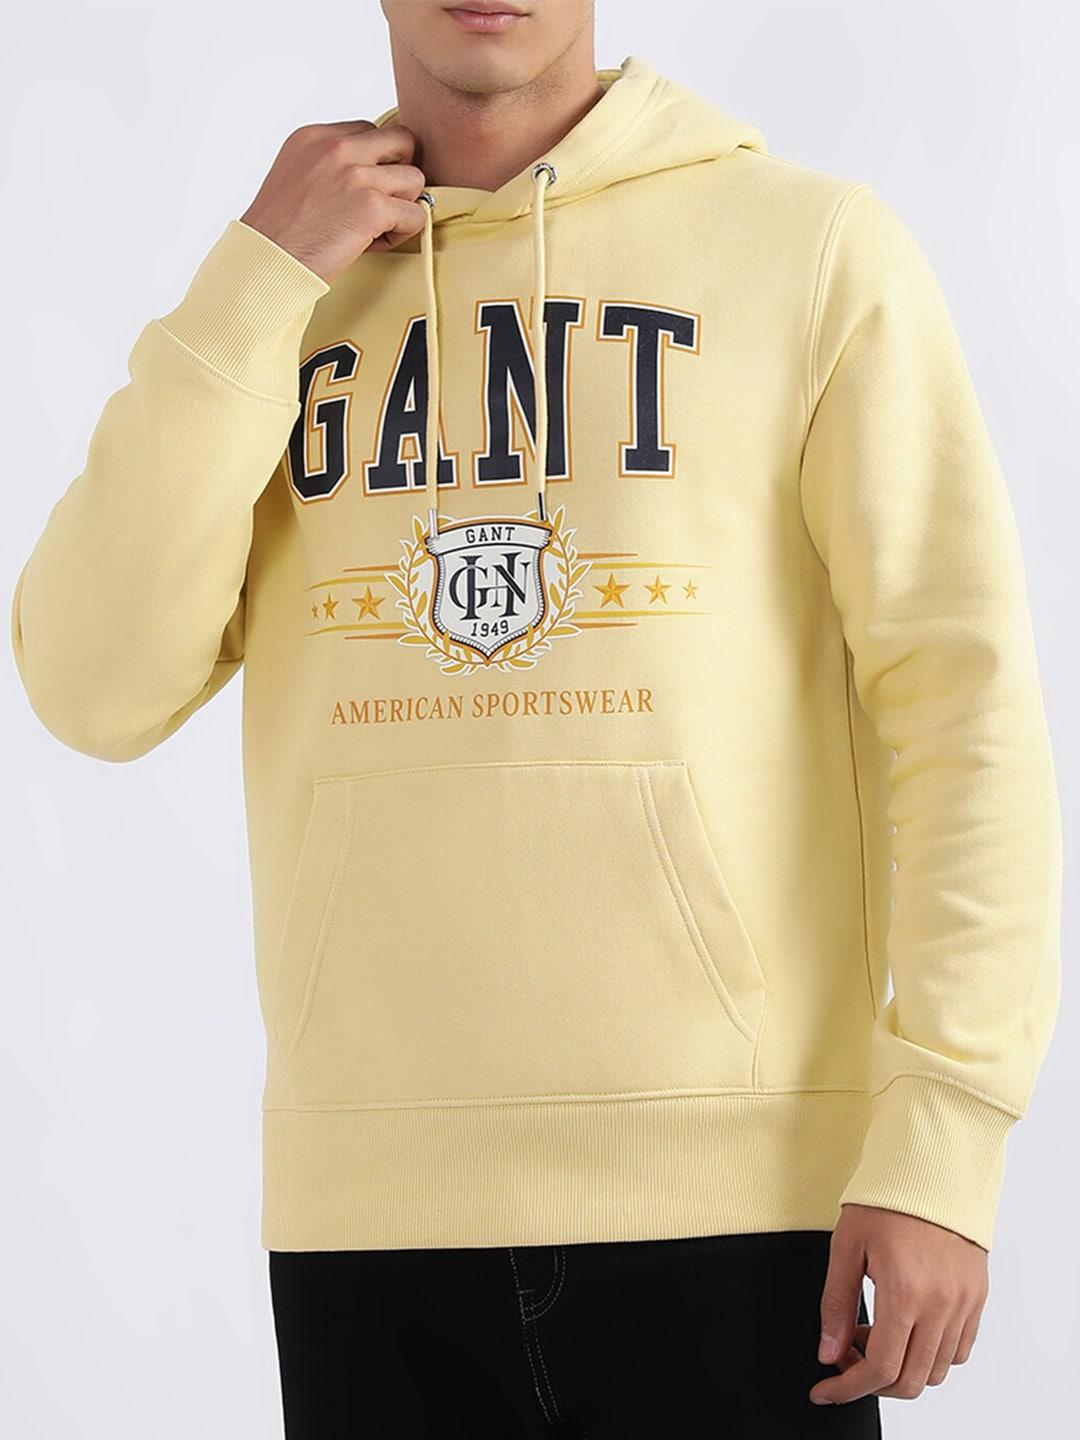 GANT Printed Hooded Sweatshirt